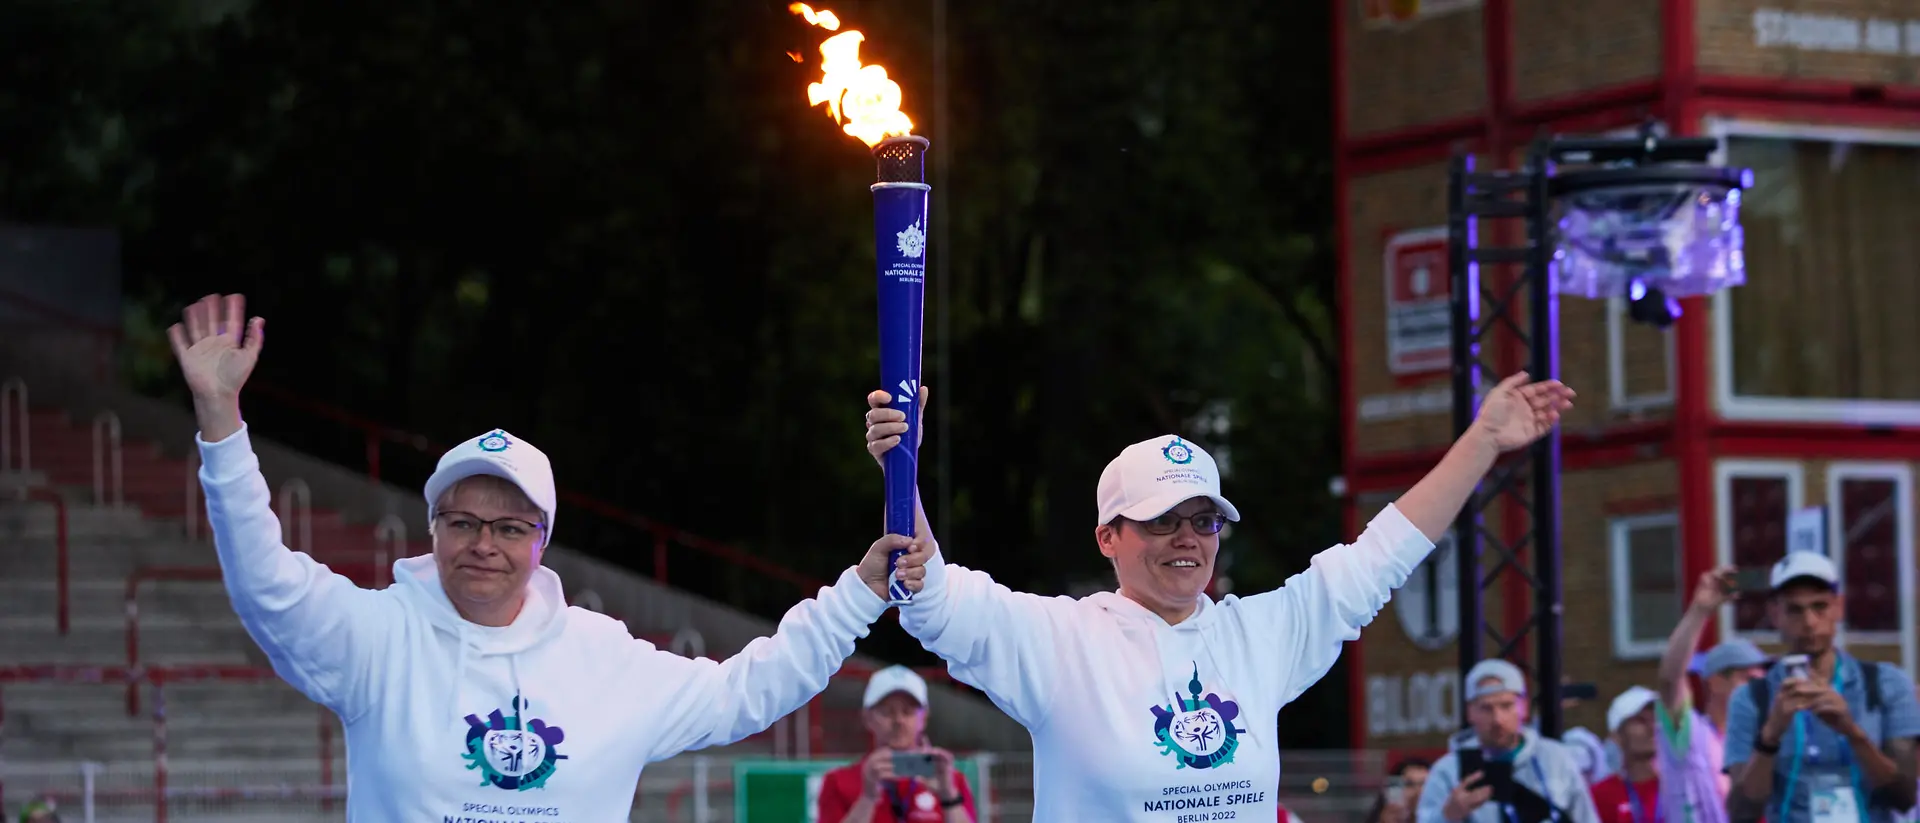 Zwei ehrenamtliche Helferinnen tragen eine brennende Fackel bei den Special Olympics.